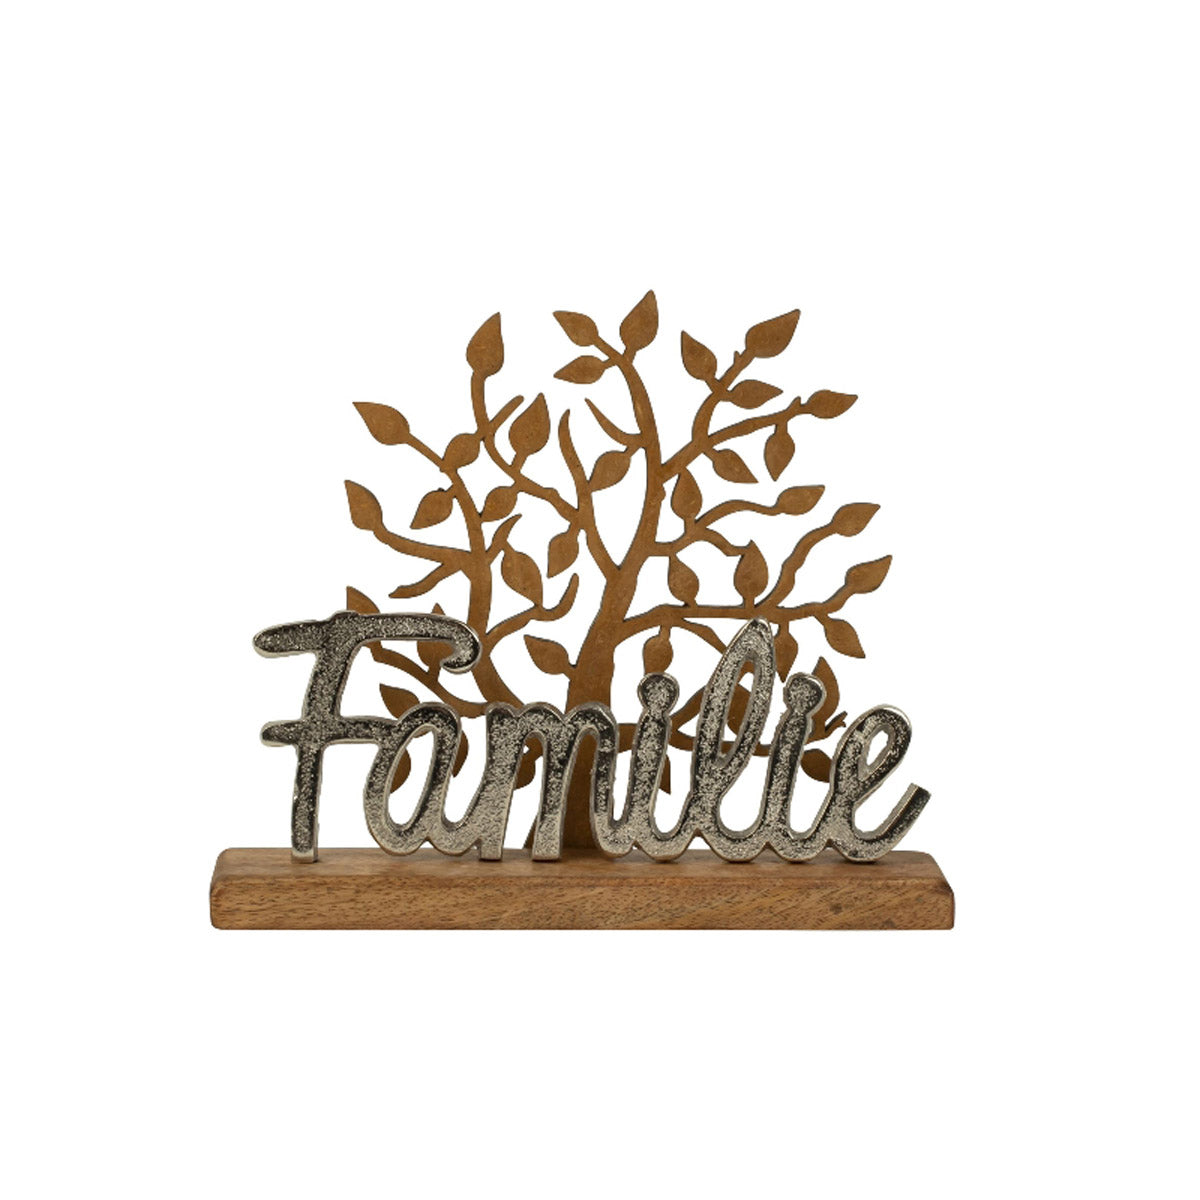 Schriftzug FAMILIE Lebensbaum Deko Baum Holz Metall Silber Aluminium Buchstaben zum hinstellen Natur (Familie/Lebensbaum)